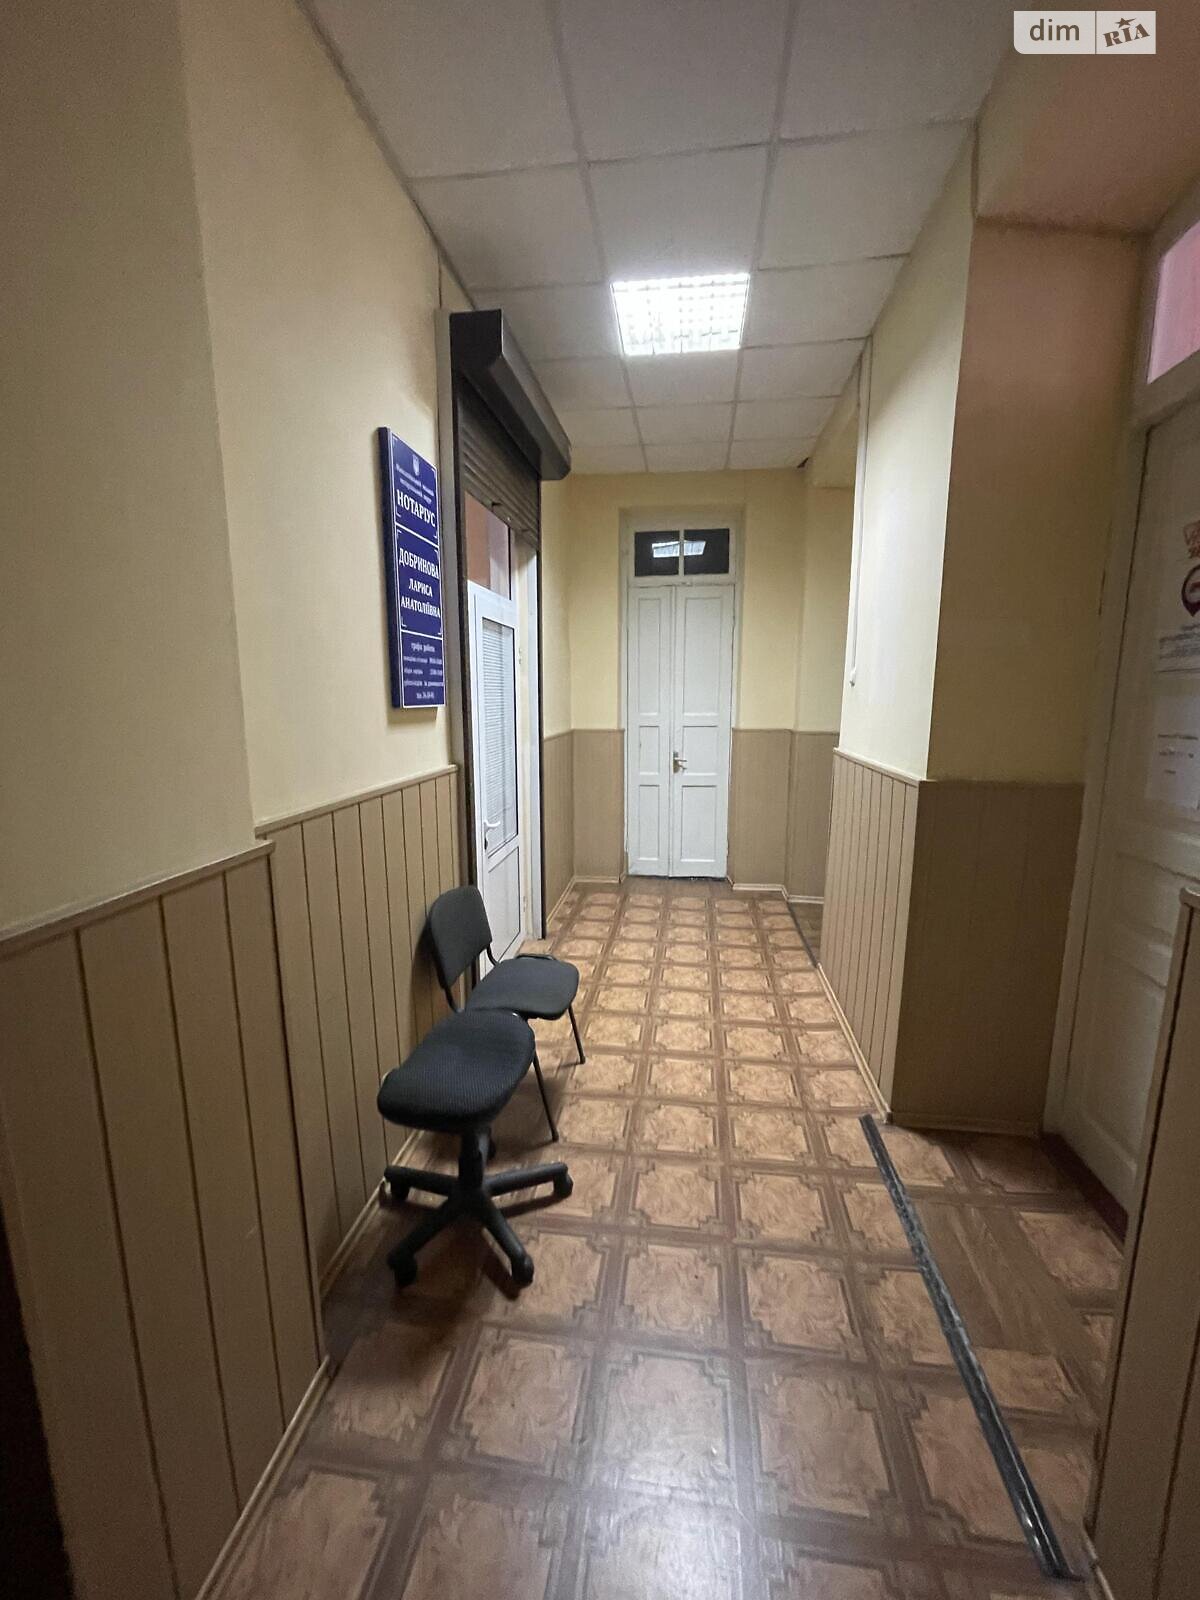 Аренда офисного помещения в Николаеве, Шевченко улица, помещений -, этаж - 2 фото 1